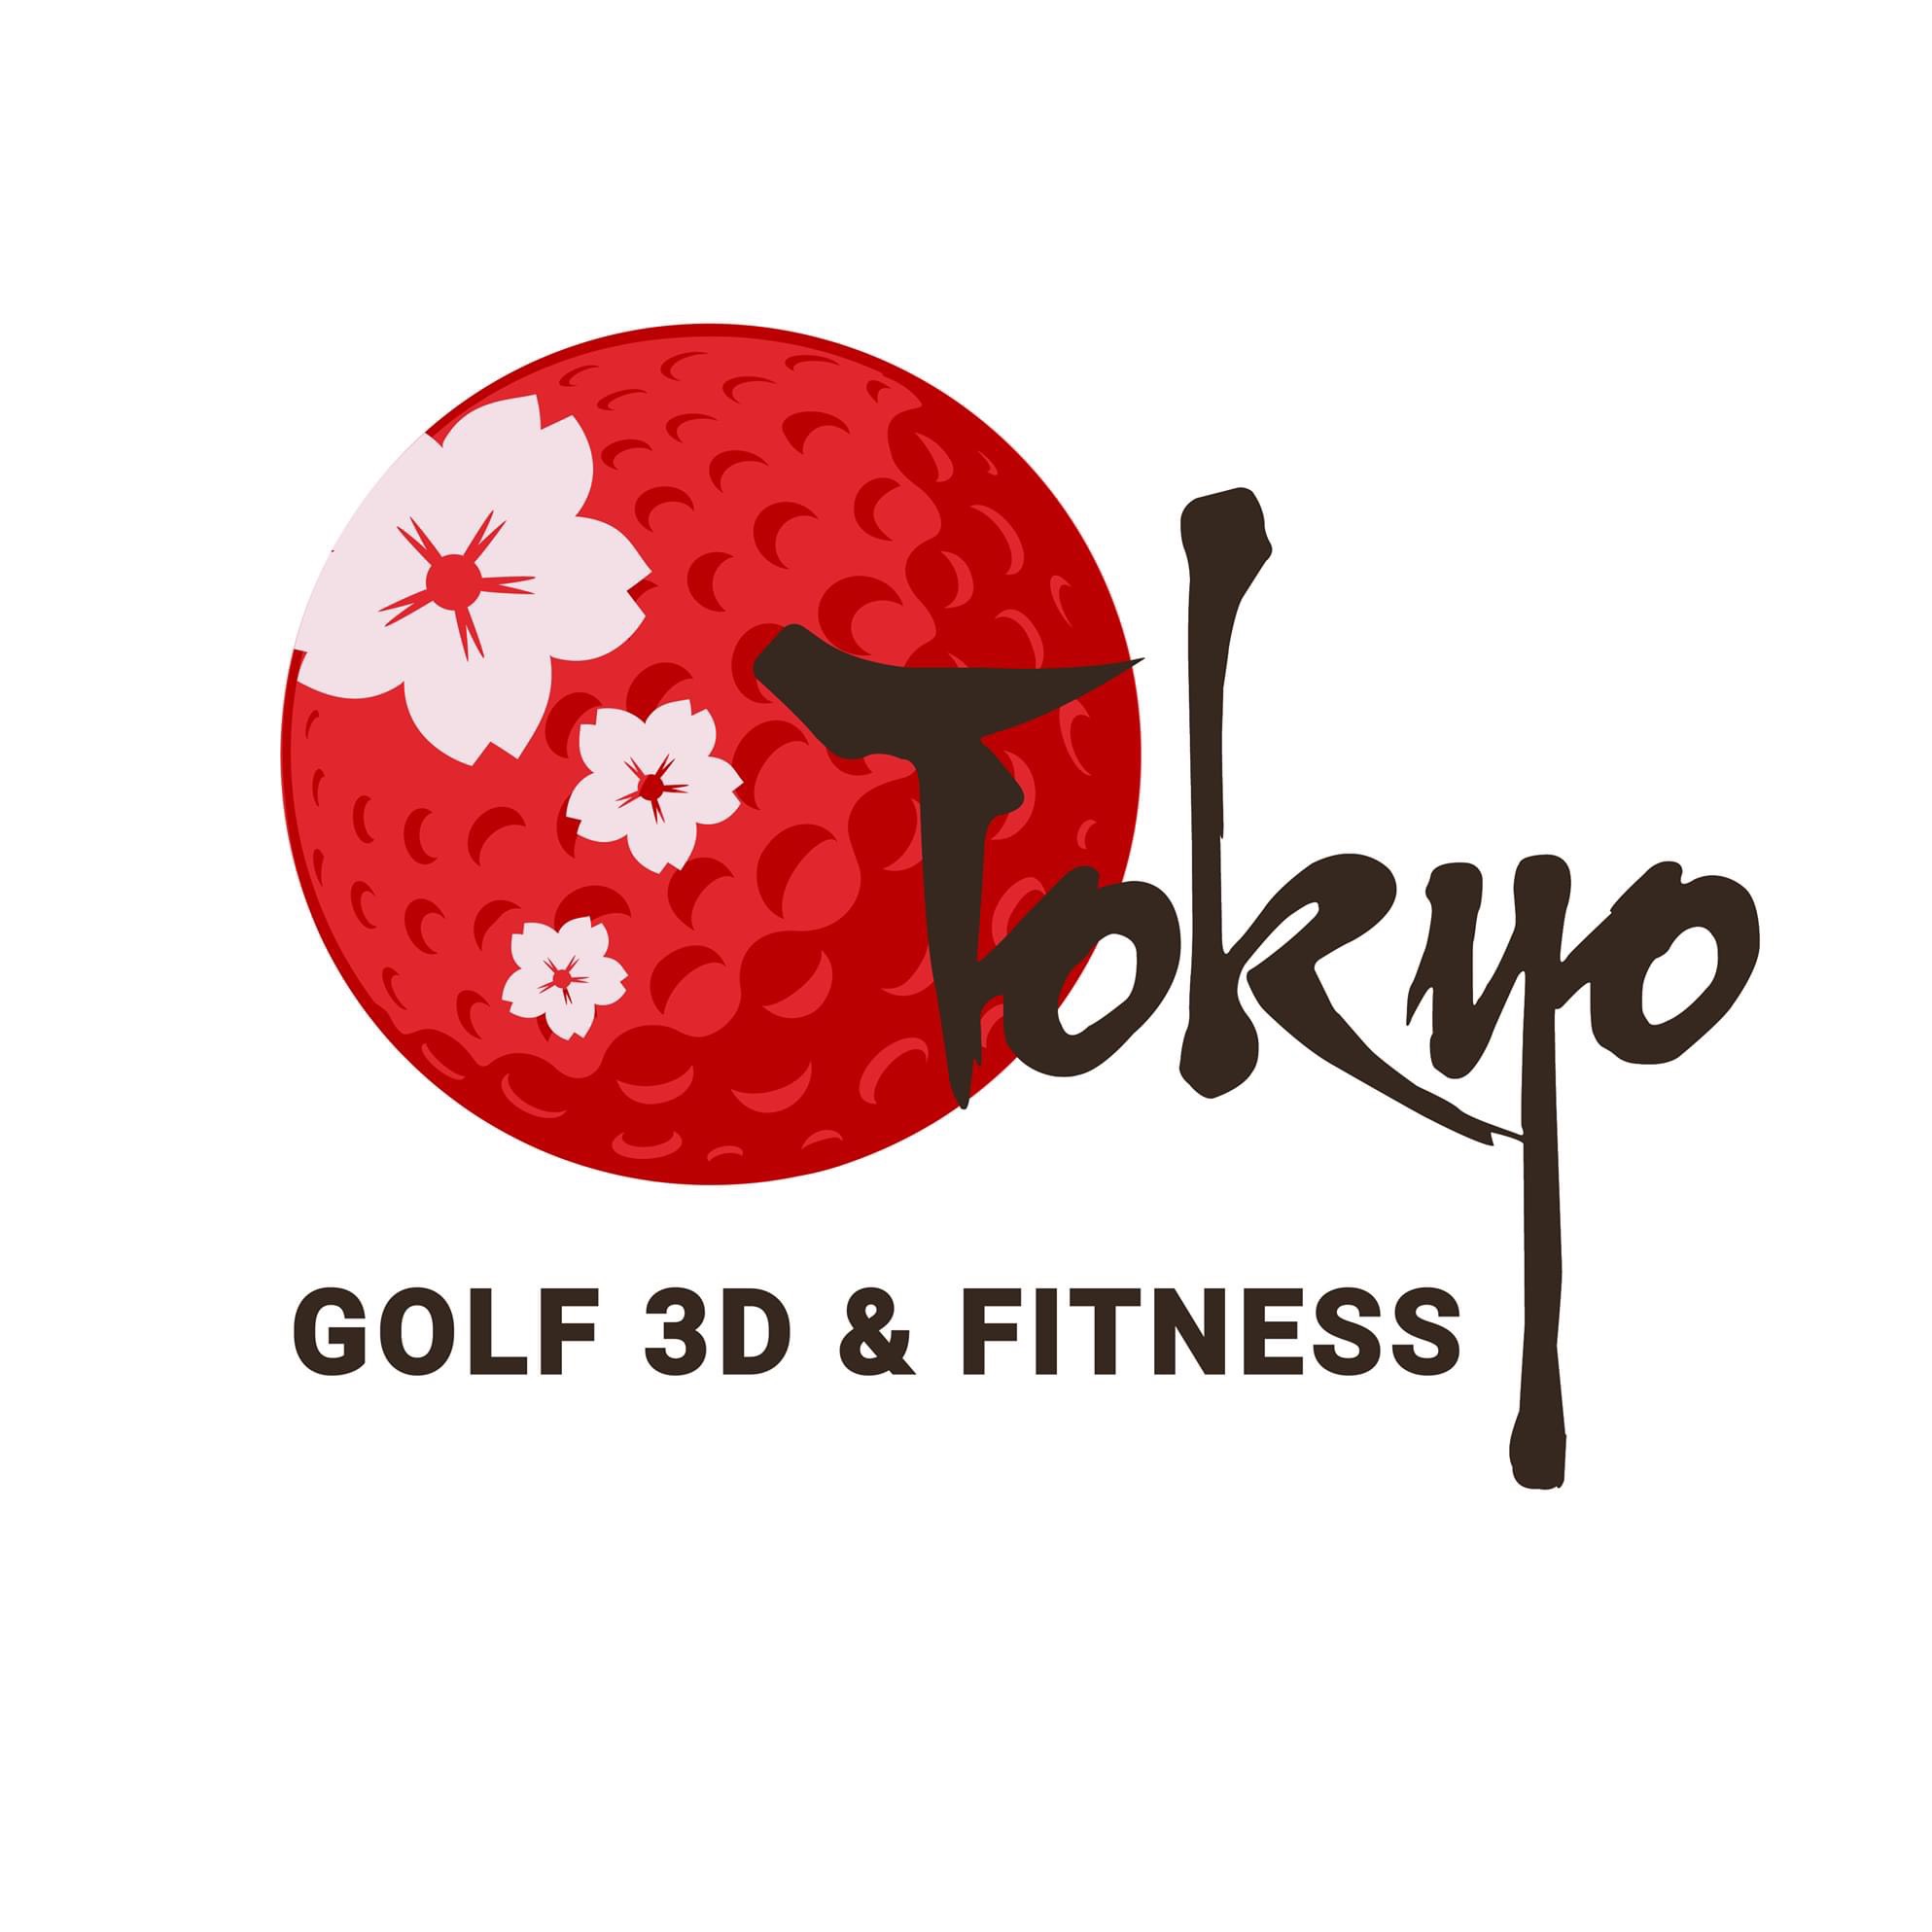 TOKYO GOLF 3D & FITNESS